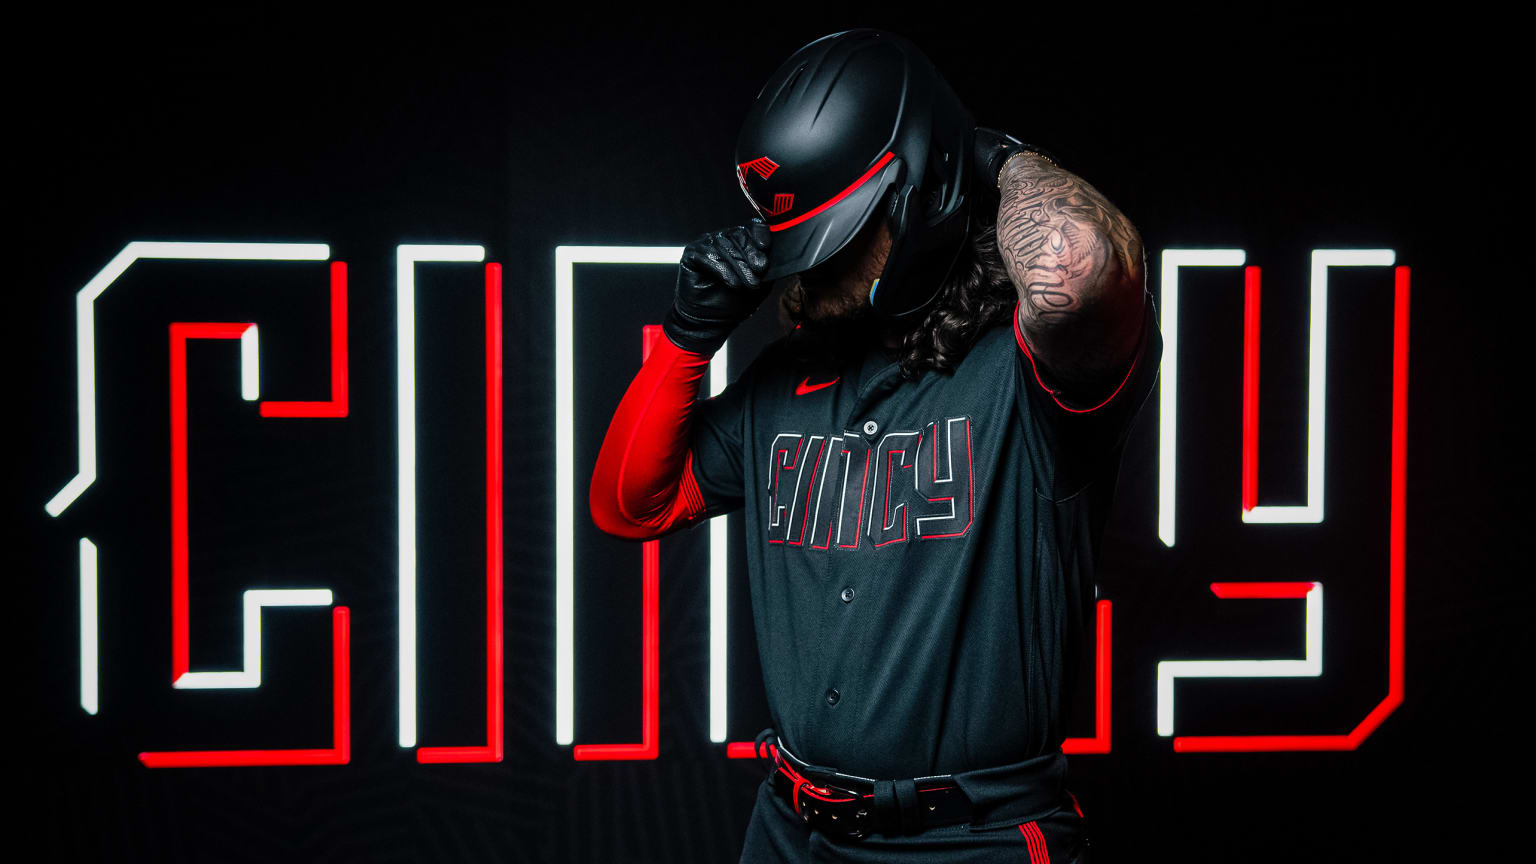 Cincinnati Reds unveil City Connect uniforms on sale at GABP team shop